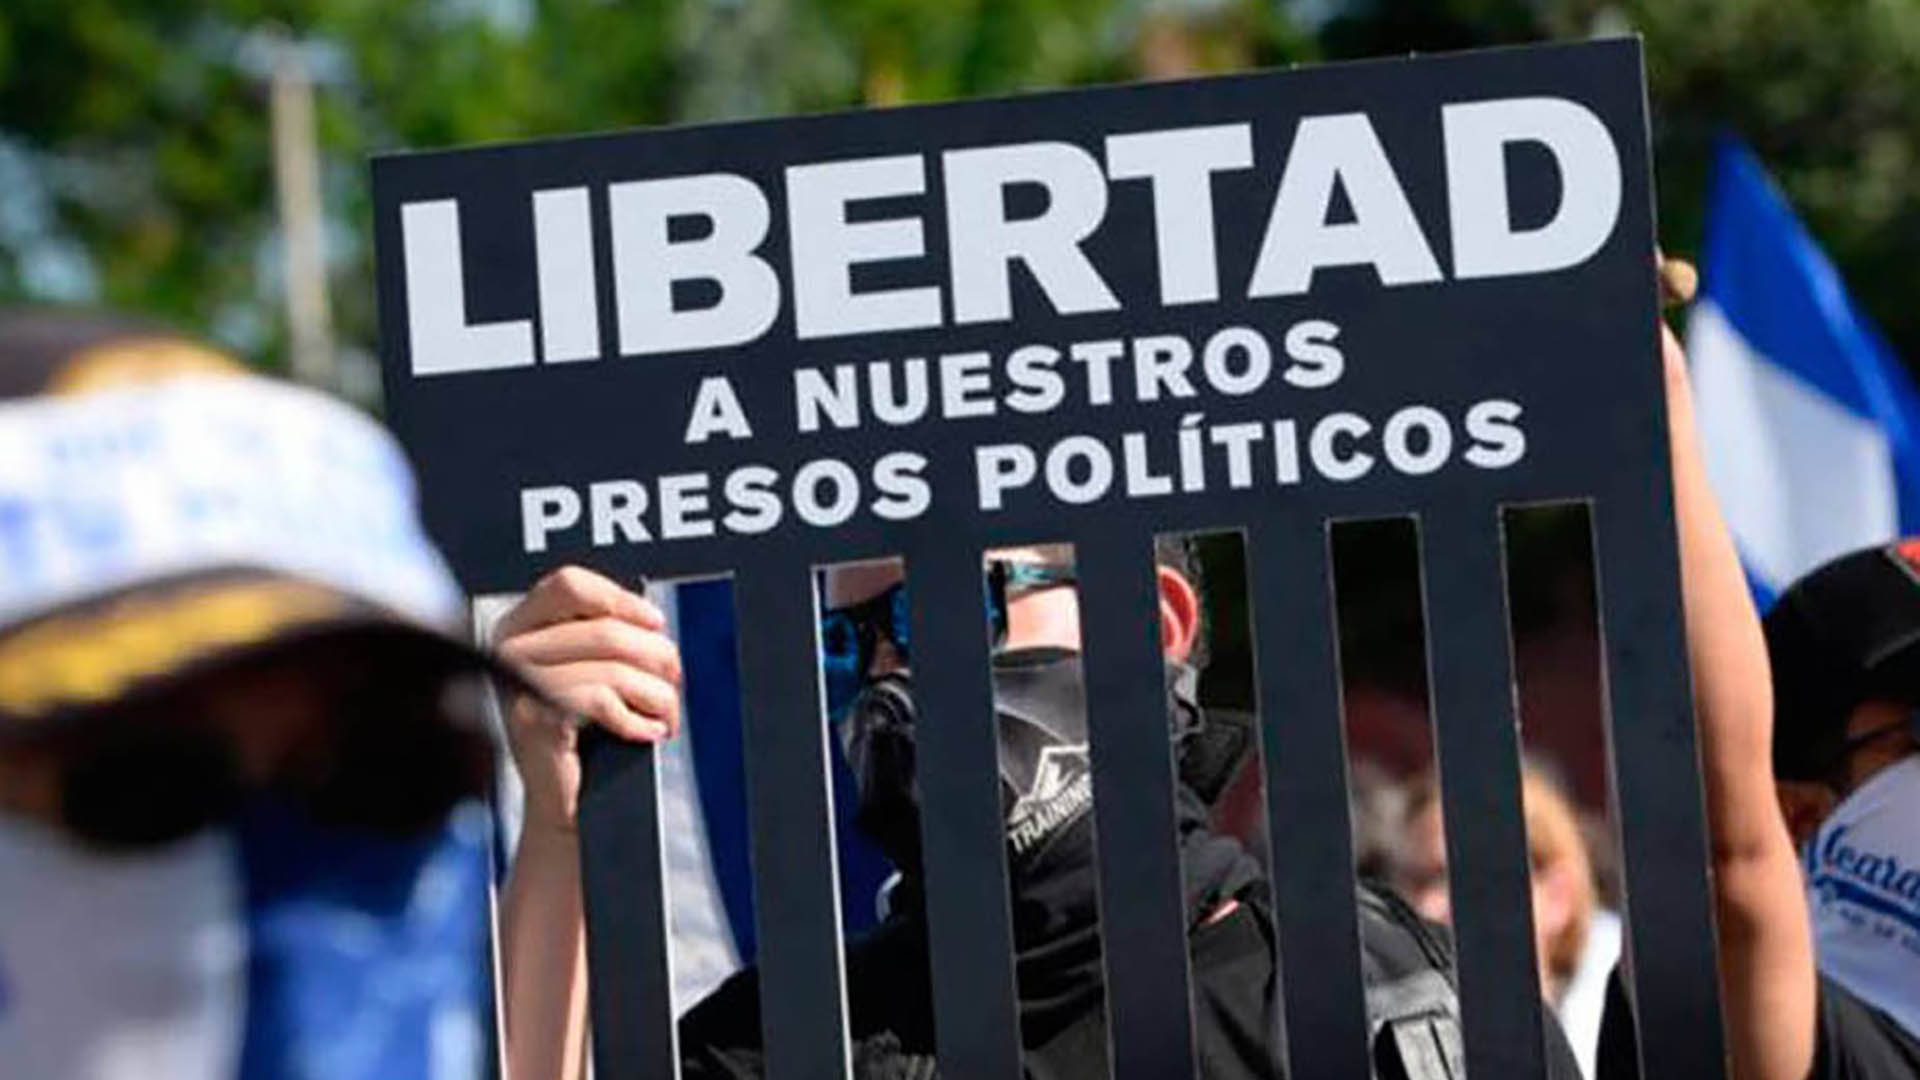 Personas protestan y exigen libertad para los presos políticos en Venezuela